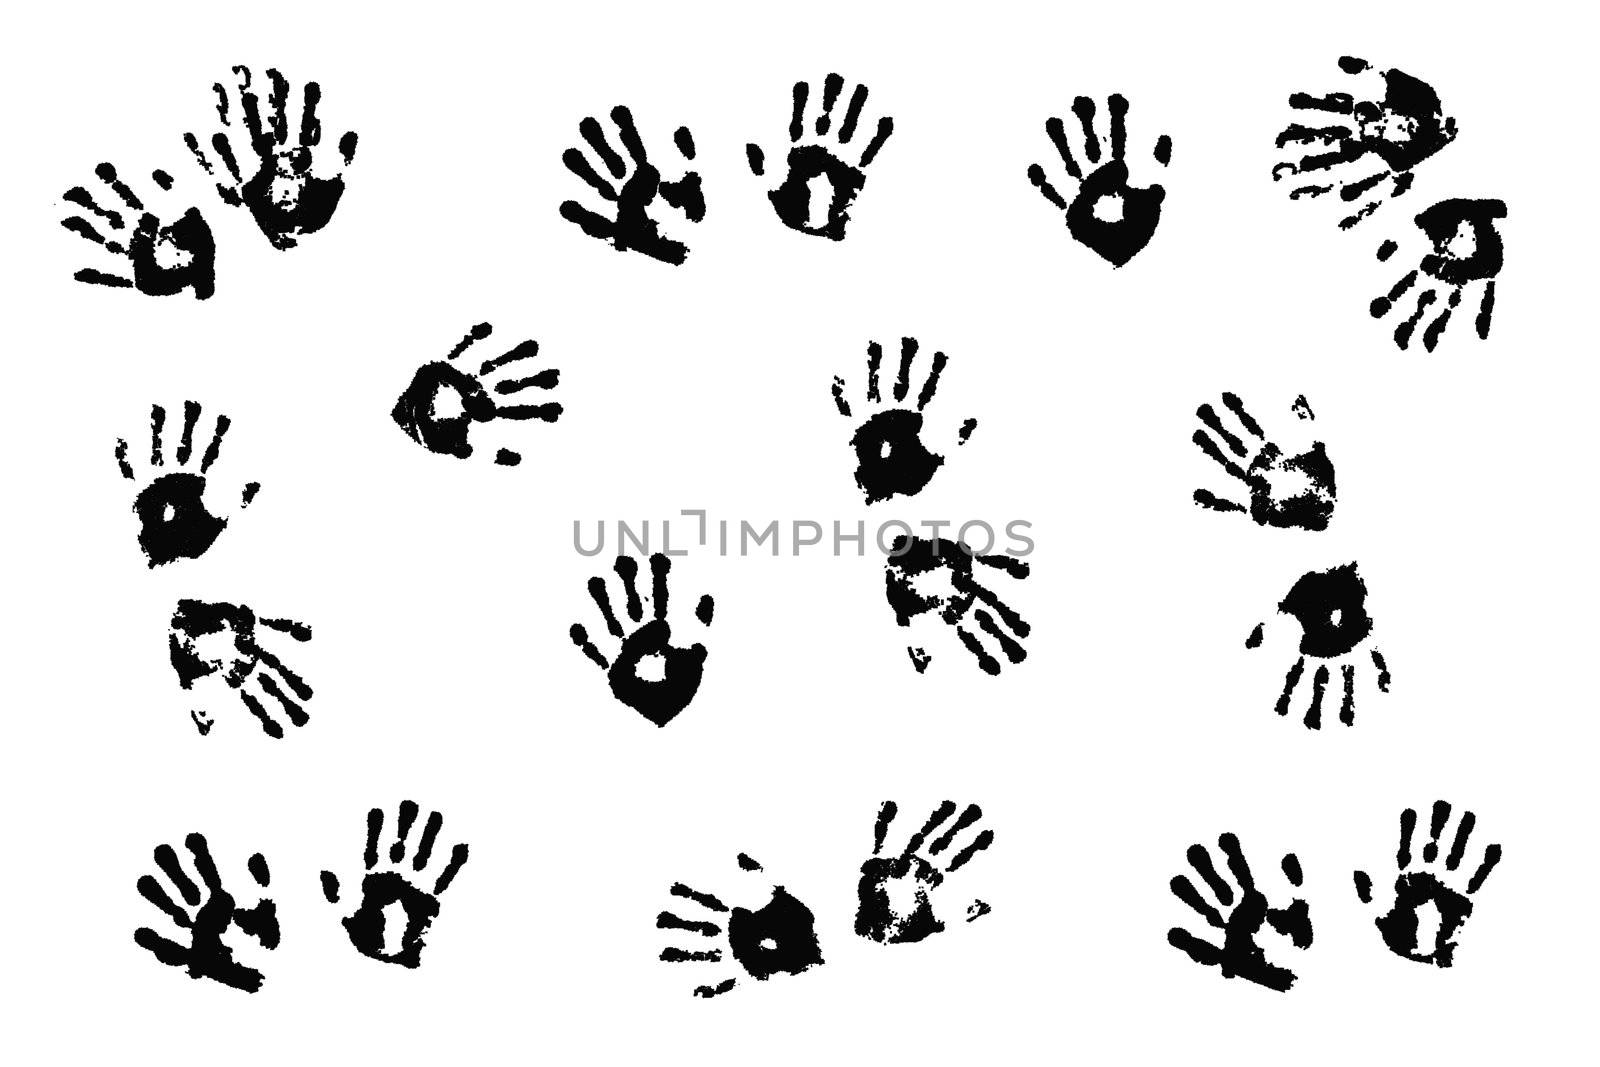 Black handprints made by children on white background.; by jarenwicklund